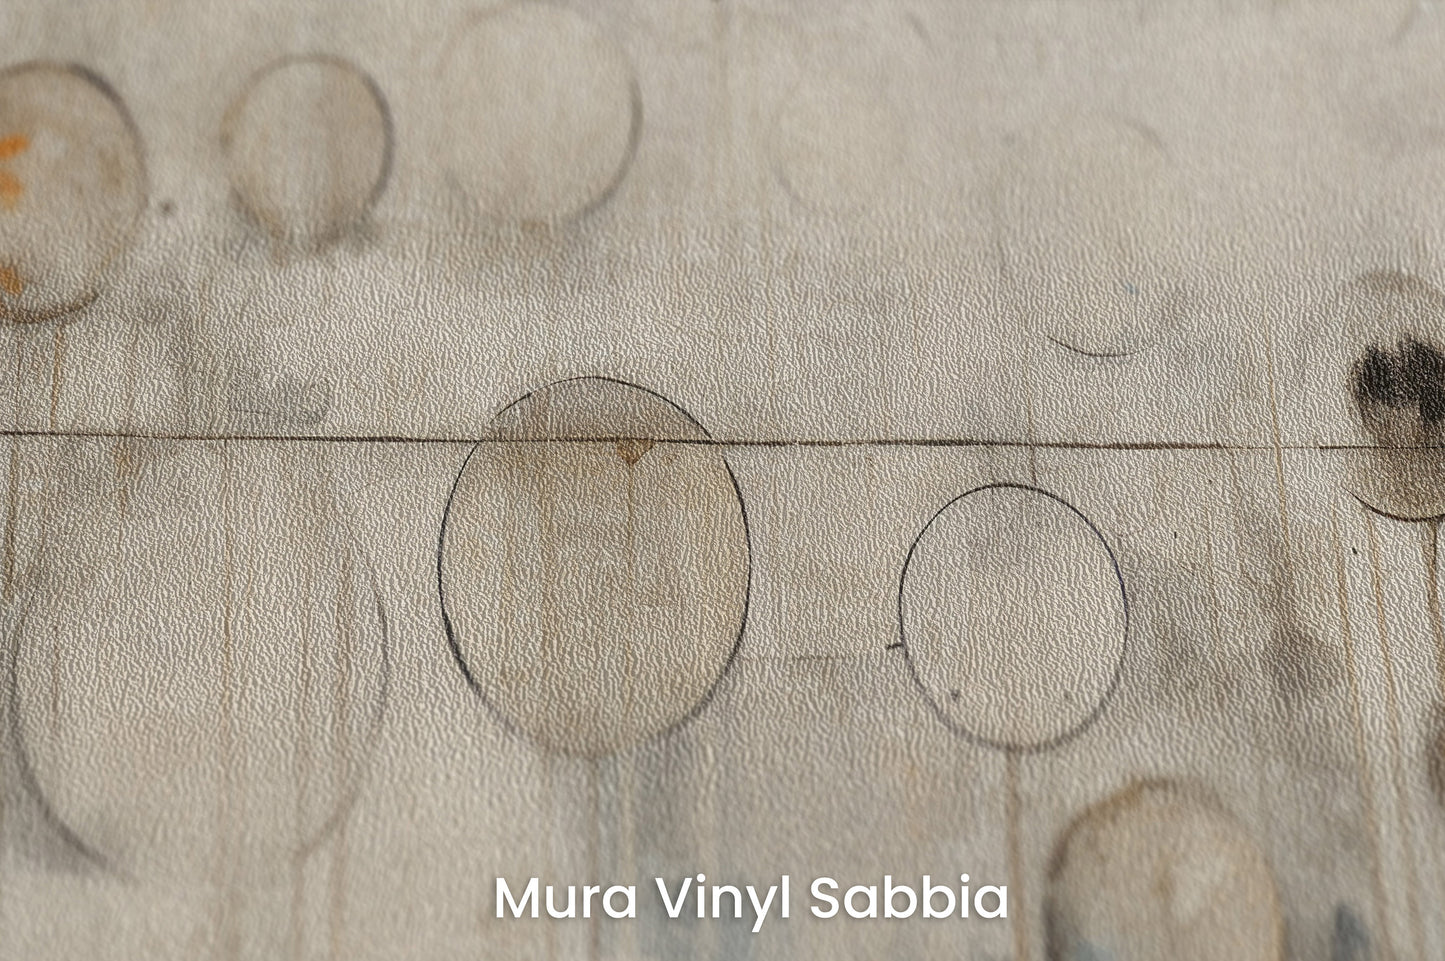 Zbliżenie na artystyczną fototapetę o nazwie CELESTIAL SPHERES ABSTRACTION na podłożu Mura Vinyl Sabbia struktura grubego ziarna piasku.